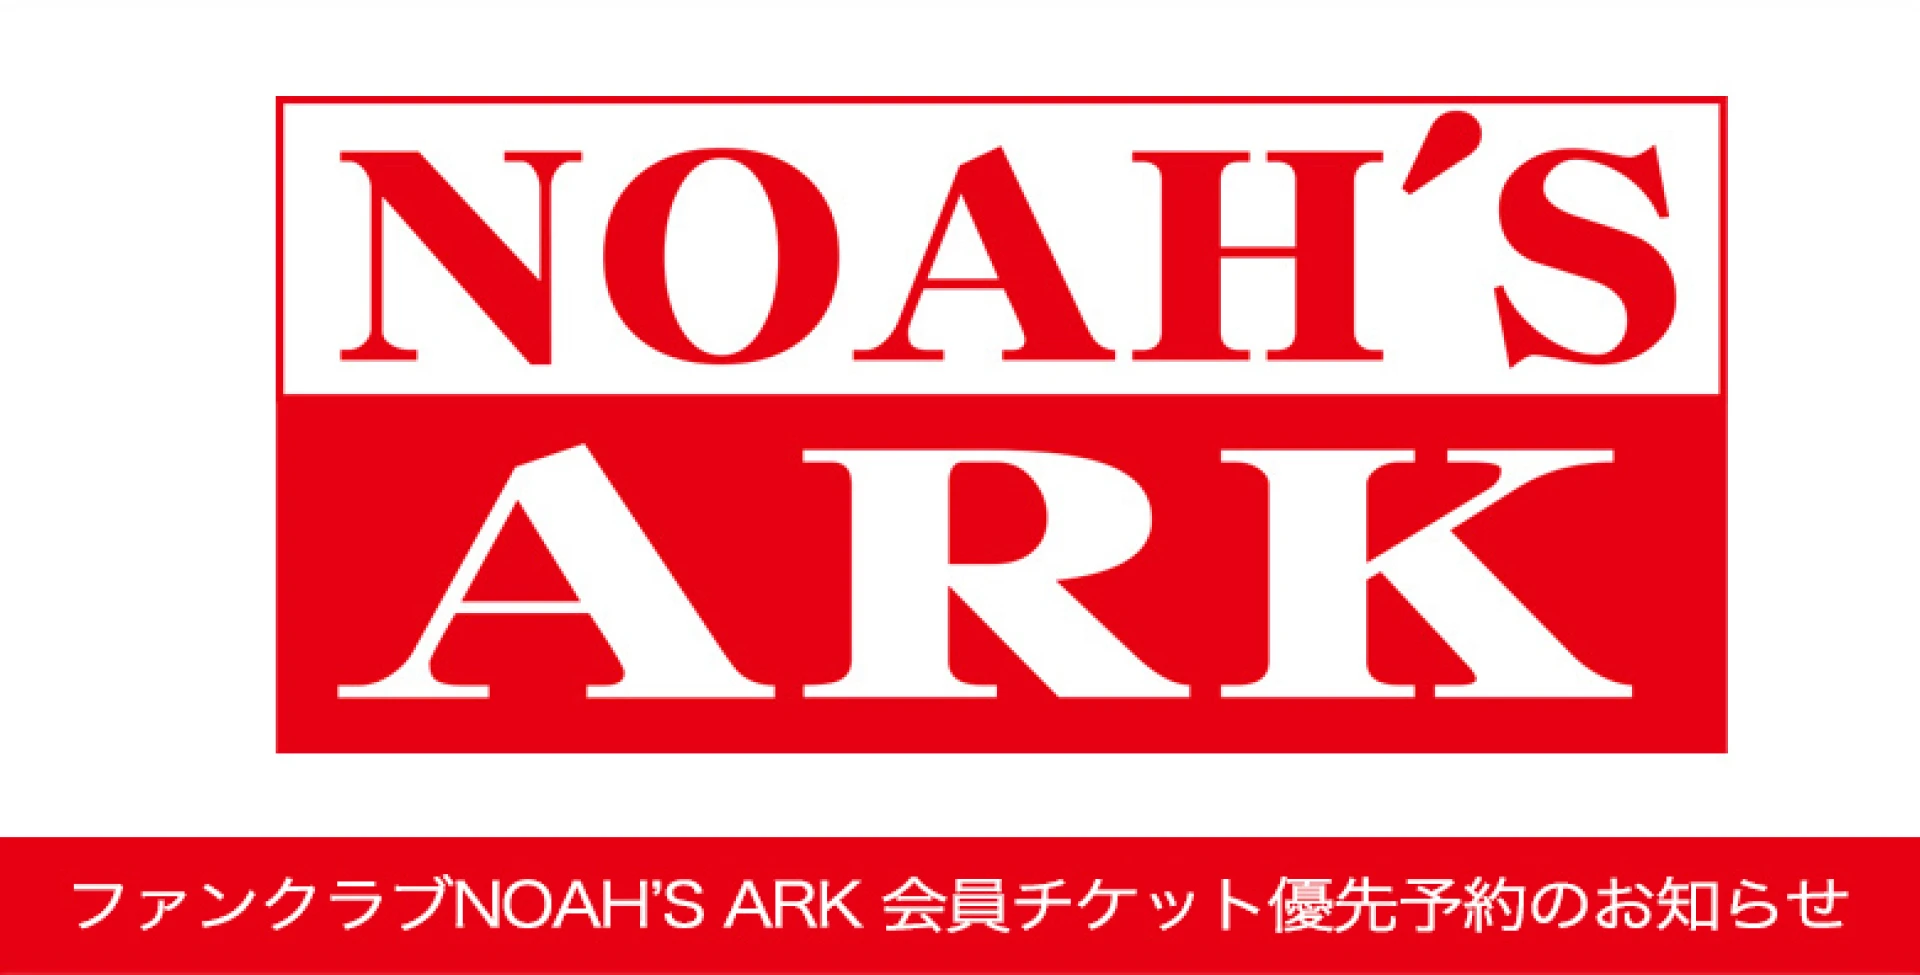 【本日18時より】ファンクラブNOAH'S ARK チケット優先予約受付のお知らせ